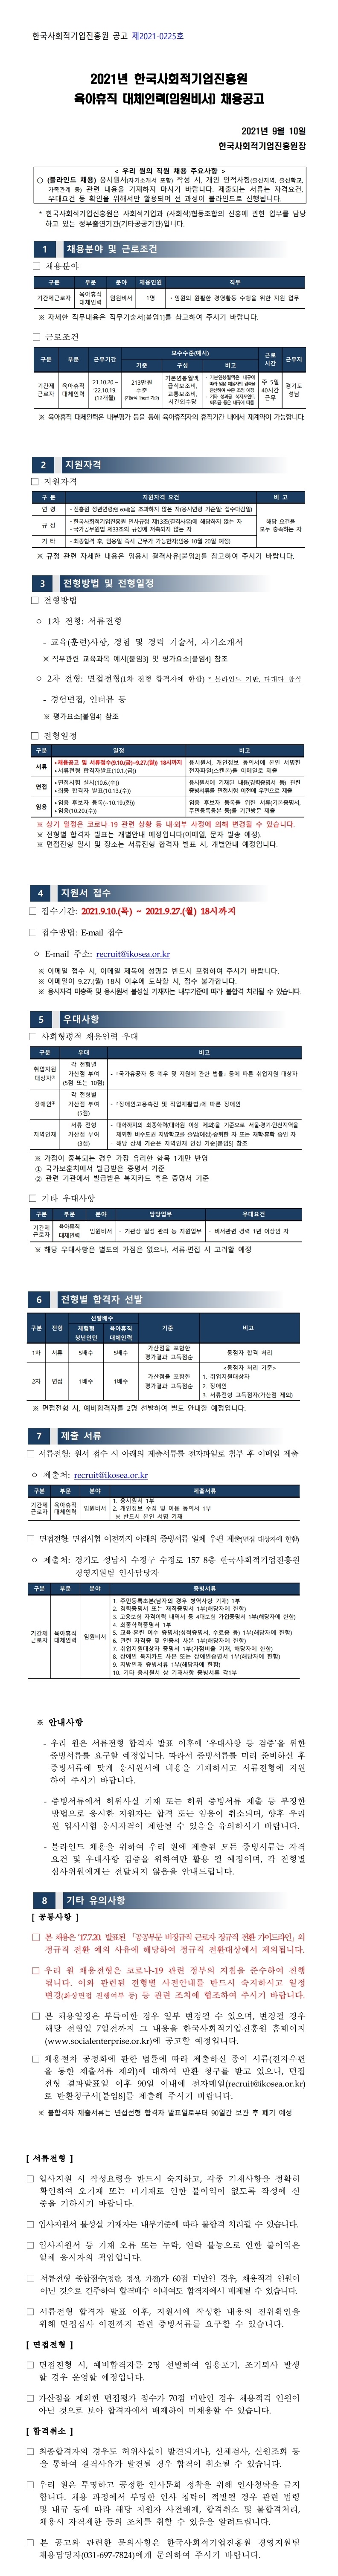 2021년 한국사회적기업진흥원  육아휴직 대체인력(임원비서) 채용공고